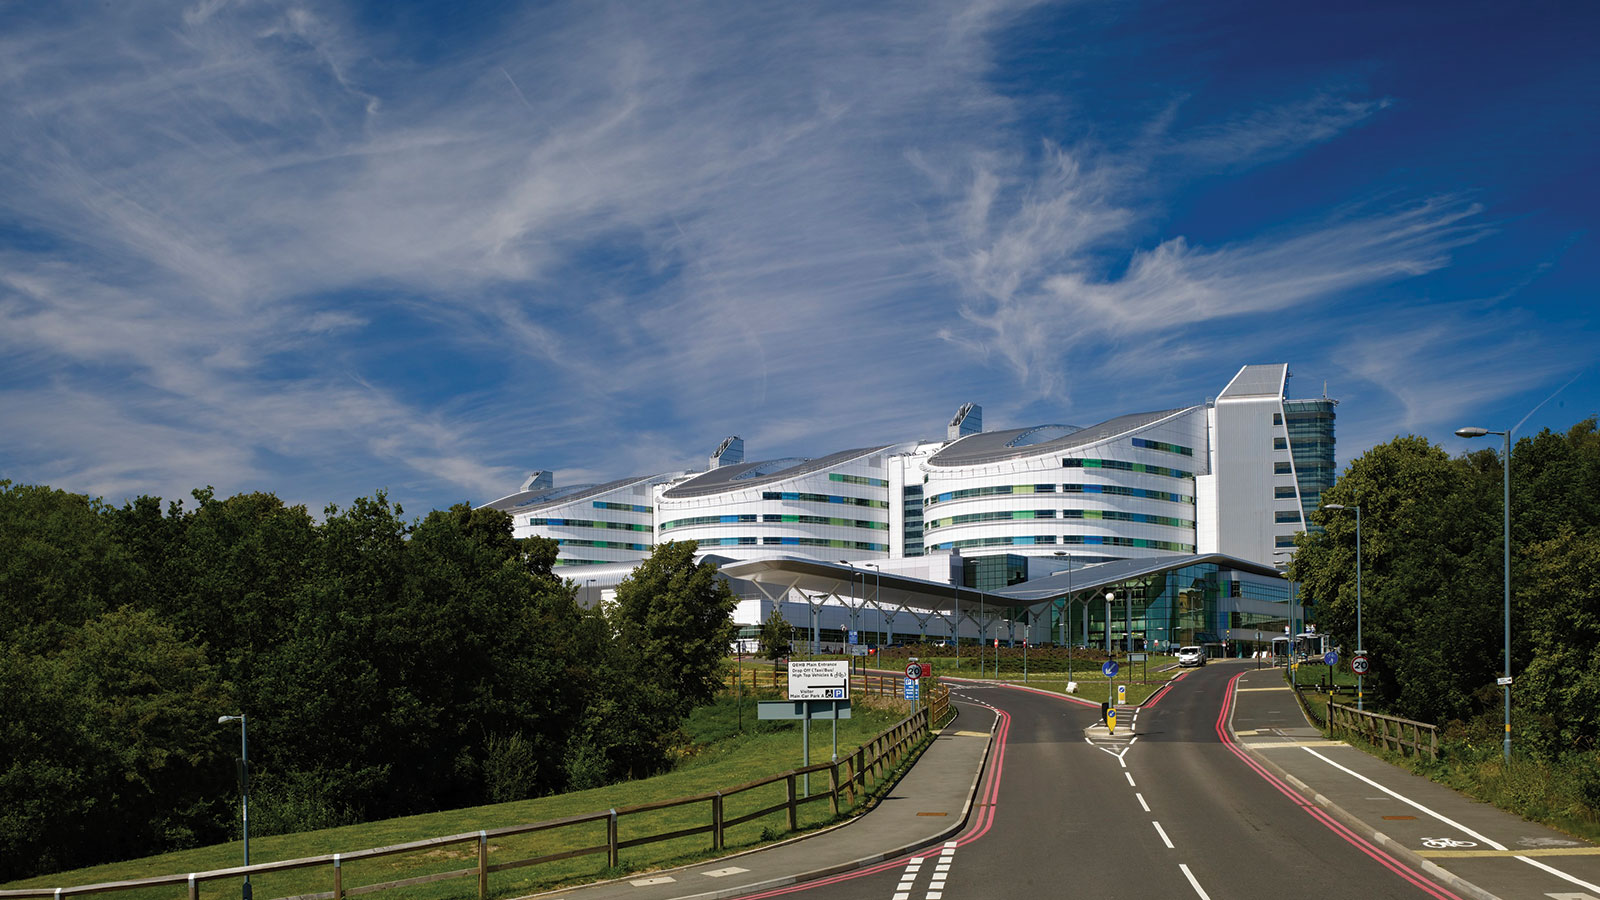 Queen Elizabeth Hospital Birmingham Birmingham, United Kingdom